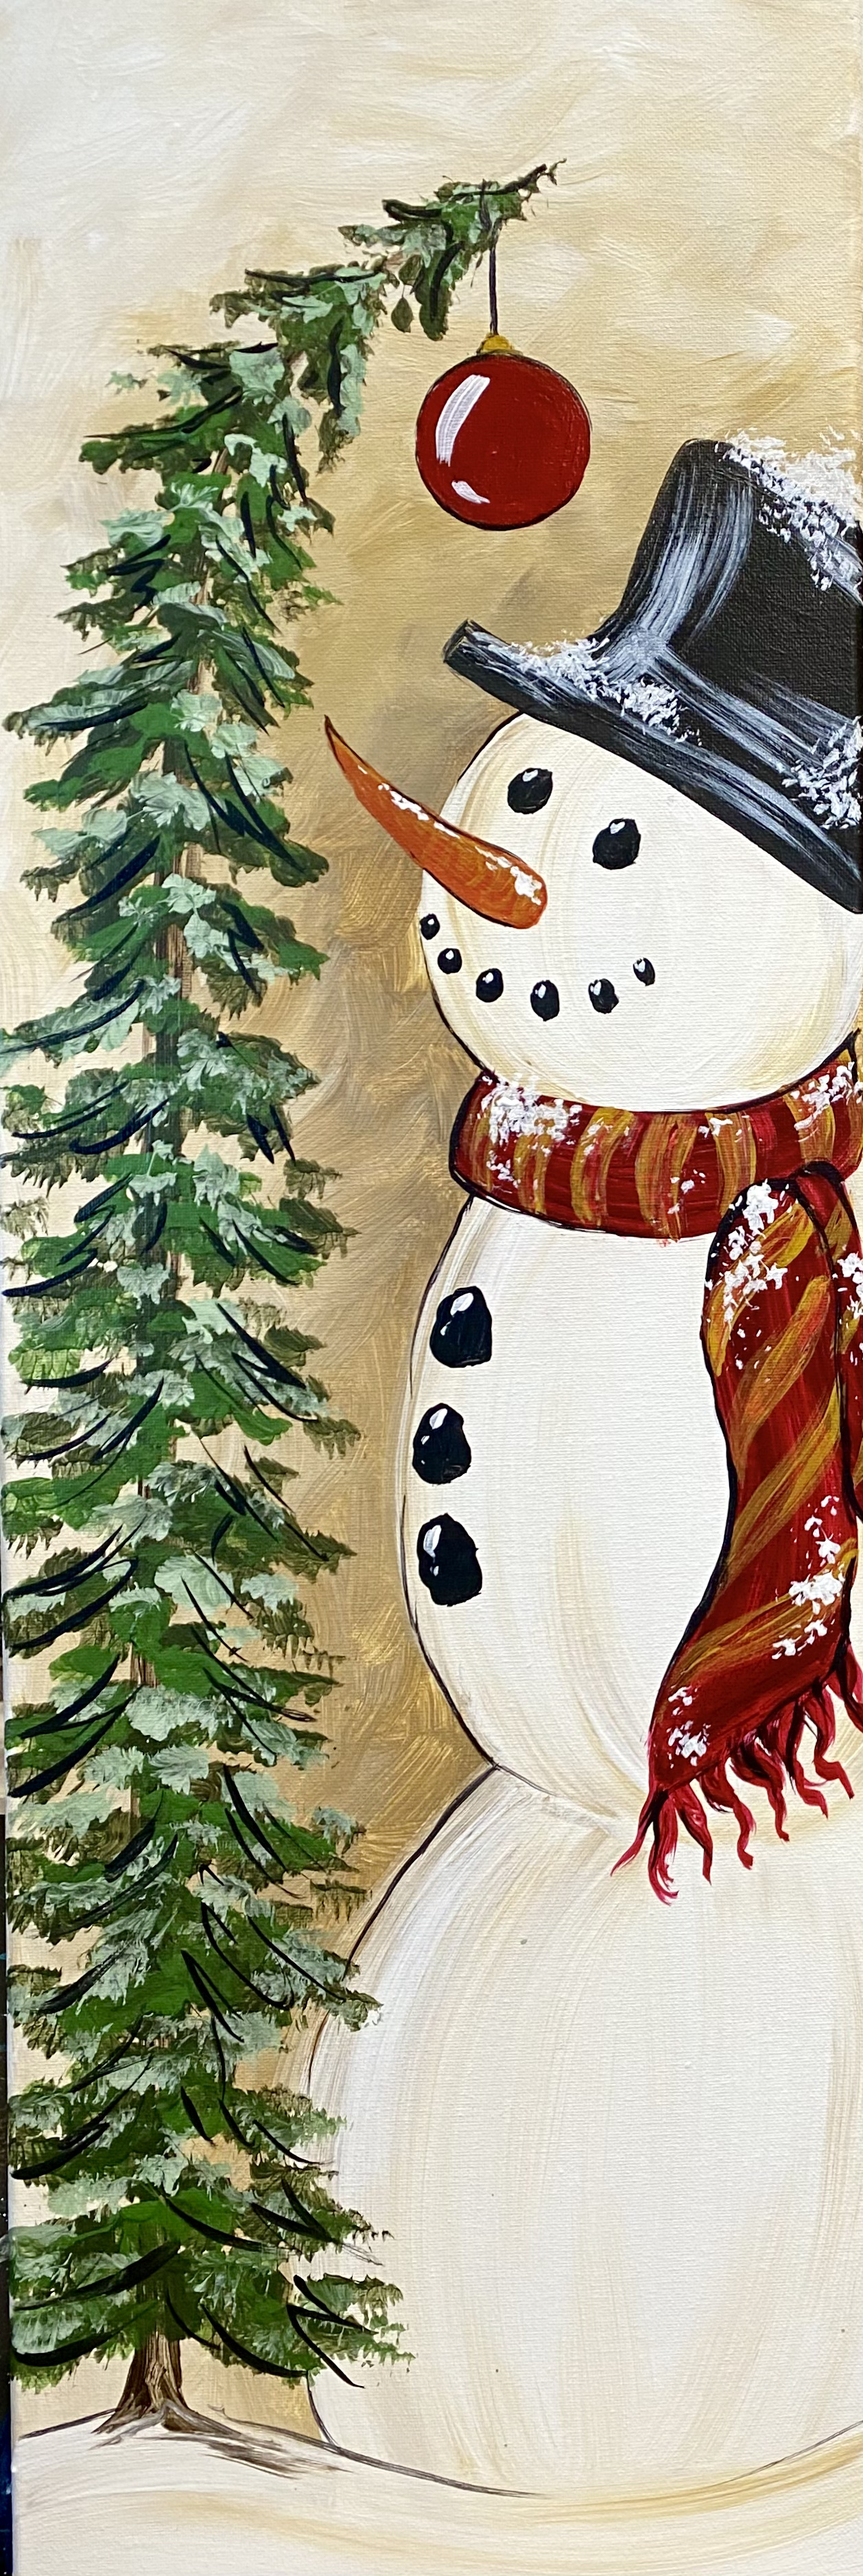 cozy-rustic-snowman